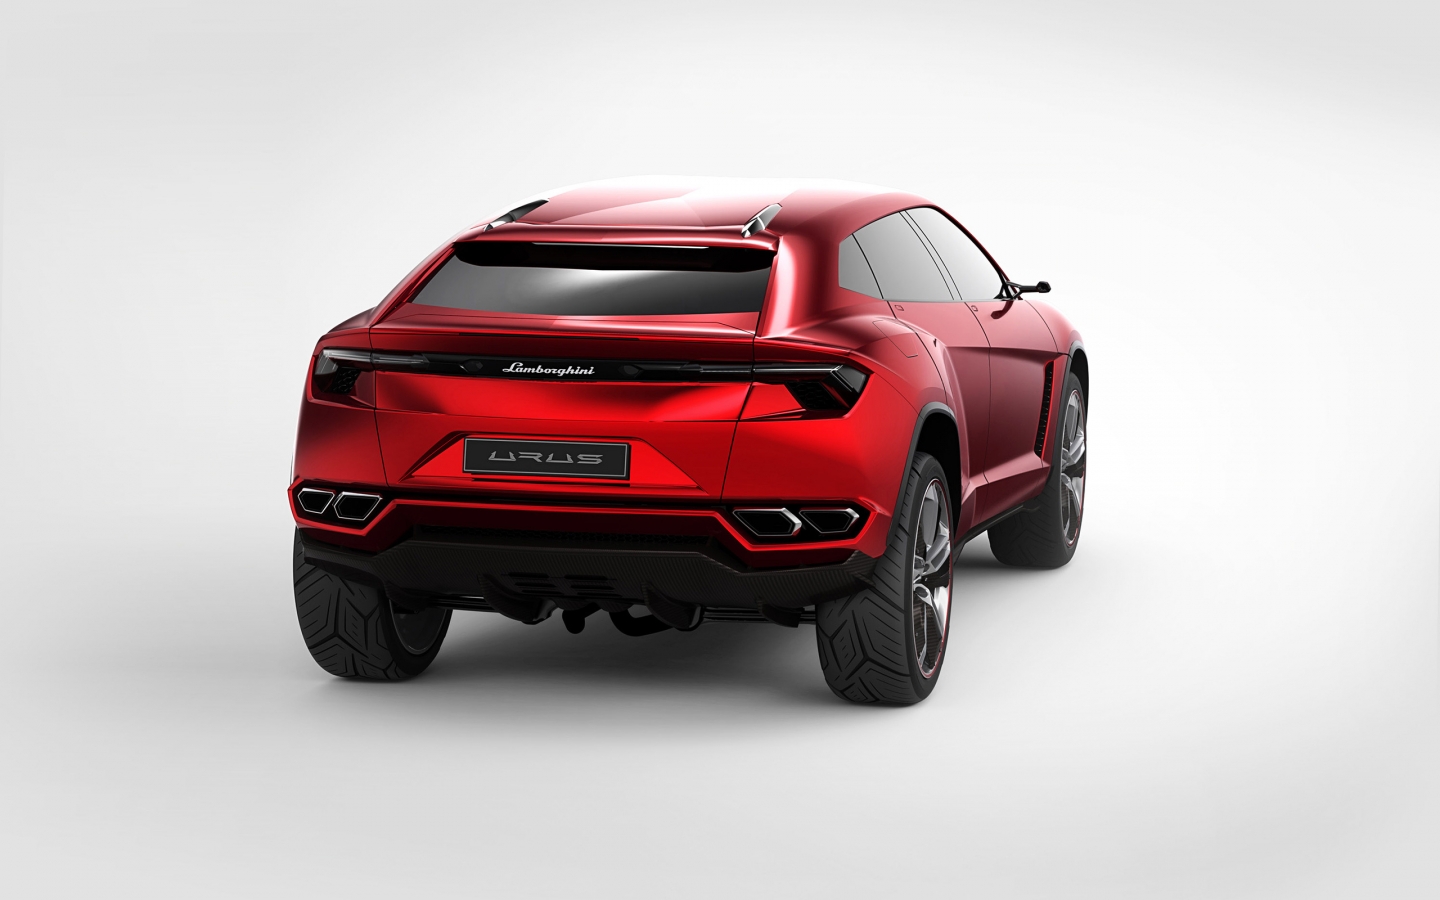 Lamborghini Urus Concept Rear Studio for 1440 x 900 widescreen resolution